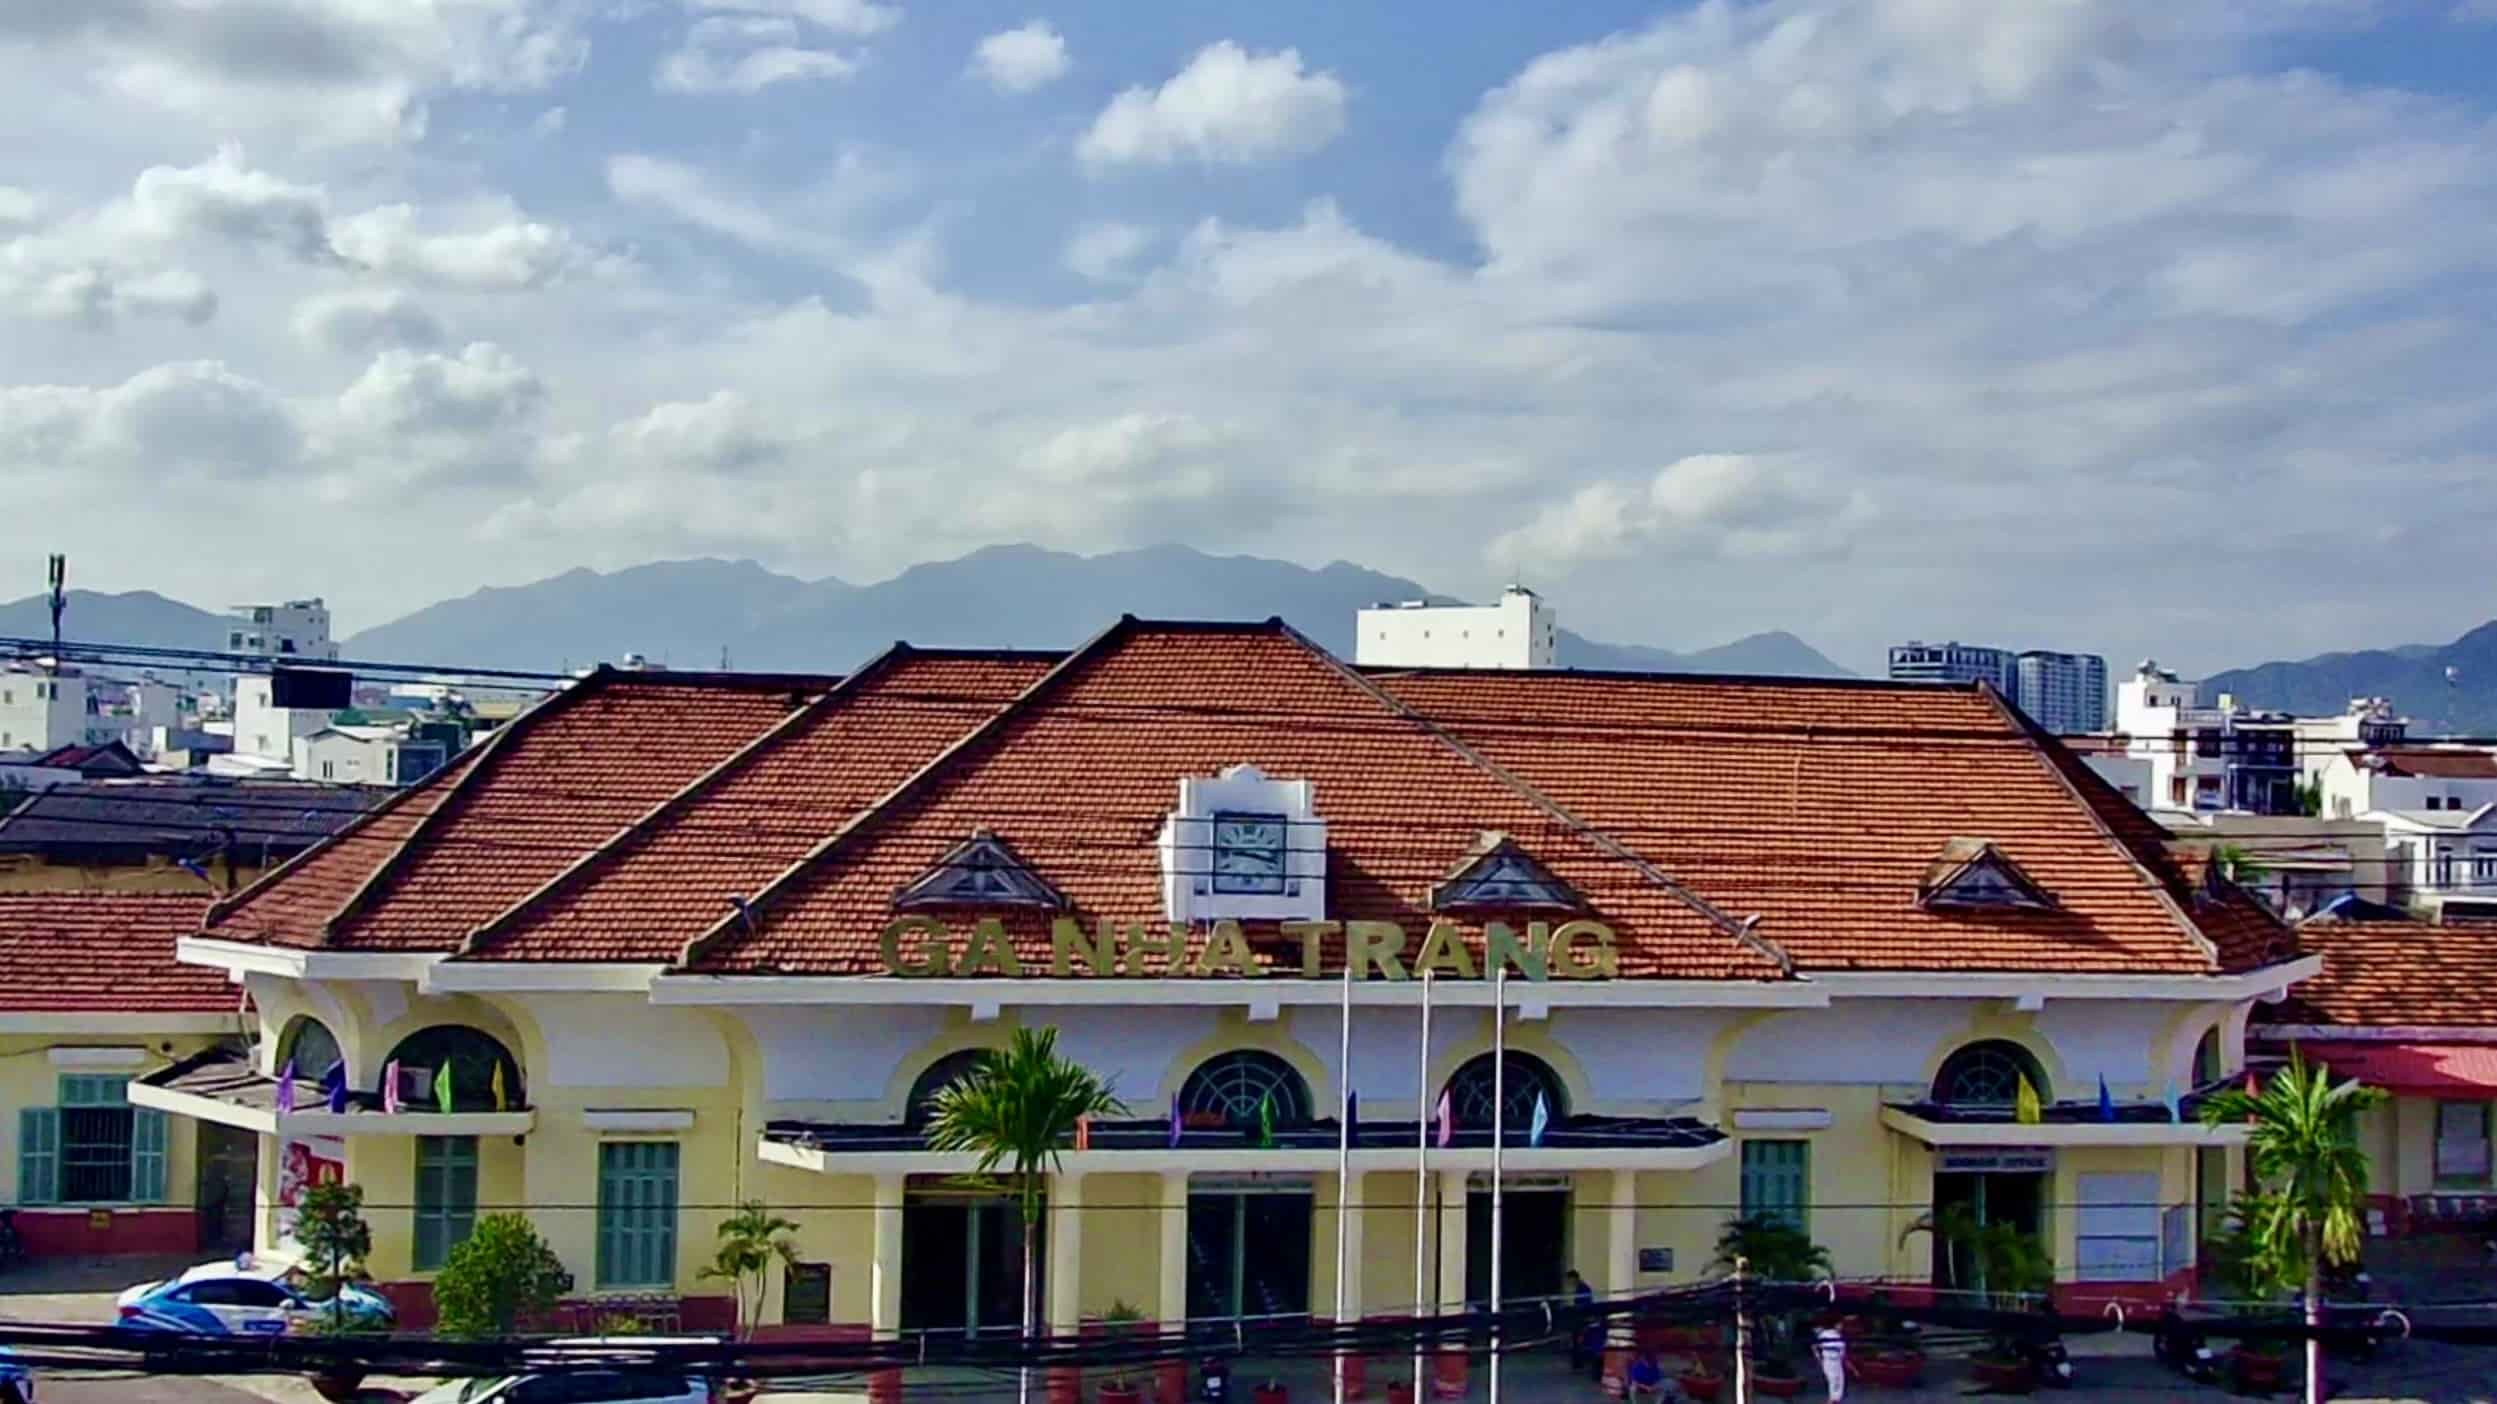 Cho đến ngày hôm nay, ga Nha Trang vẫn giữ được kiến trúc độc đáo mang đậm phong cách cổ điển Pháp. 